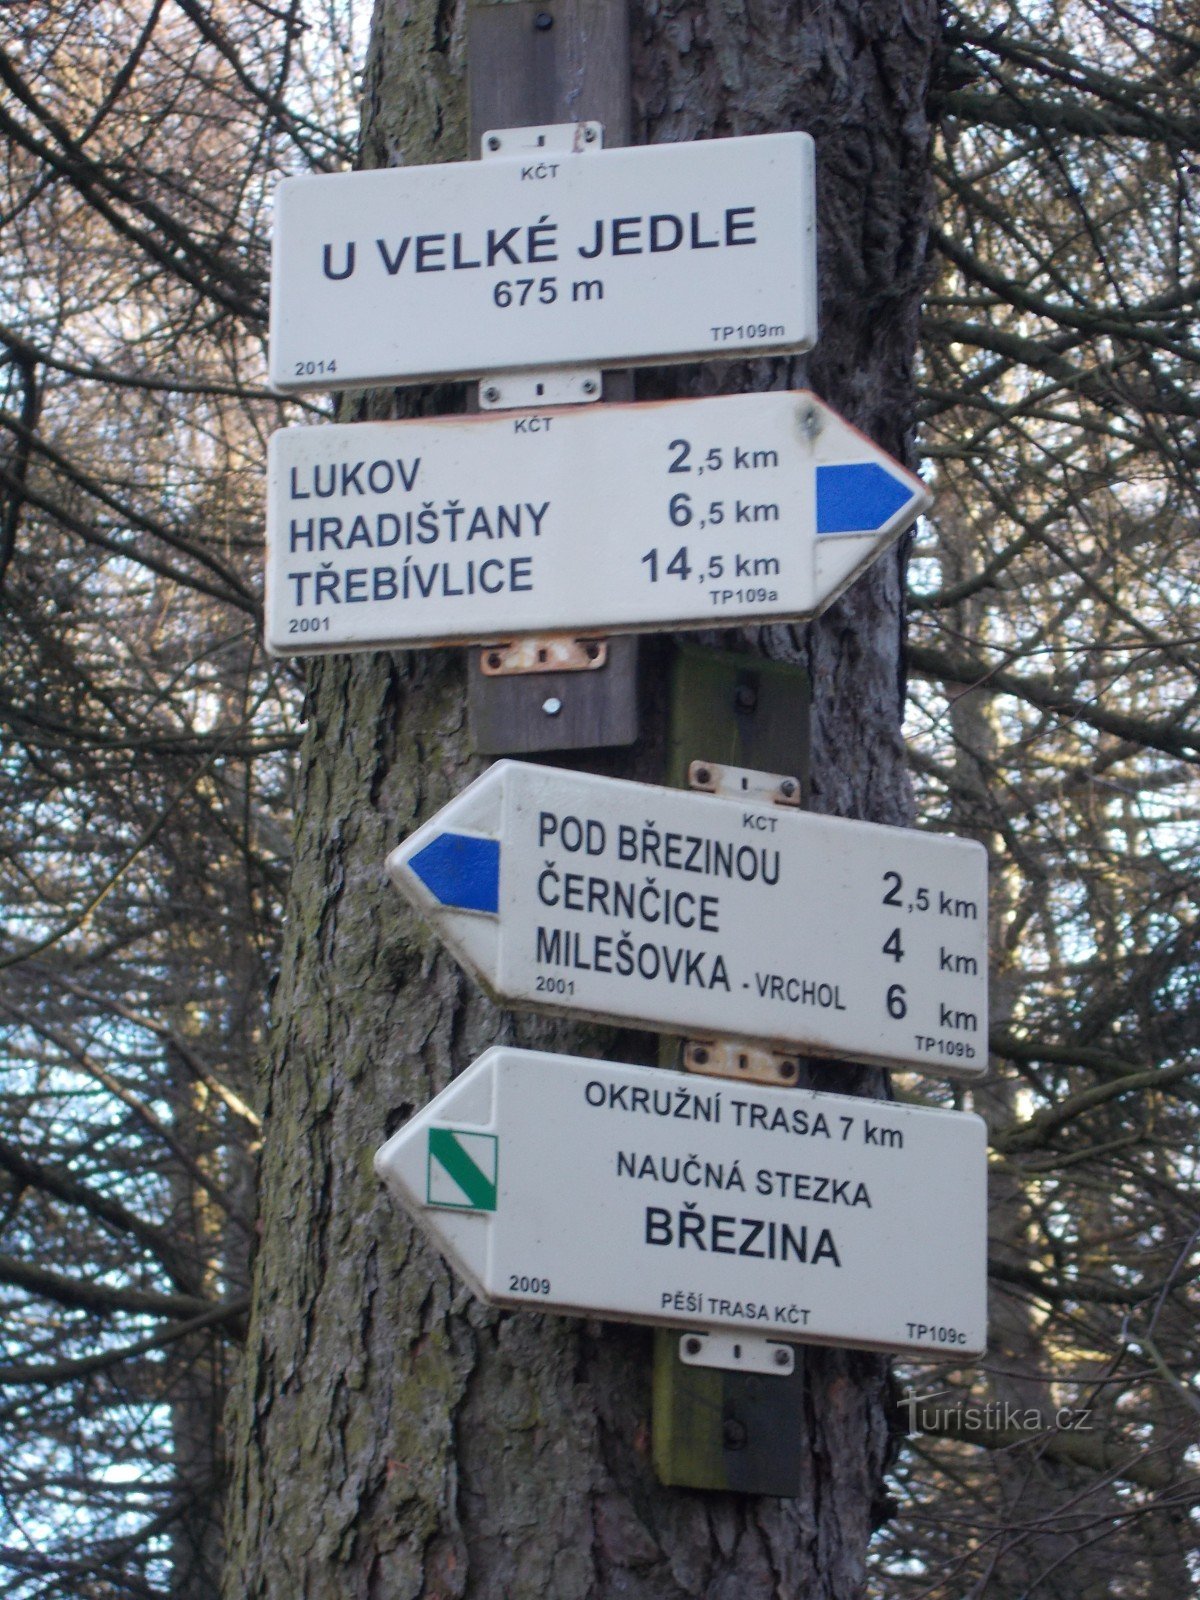 Signpost at Velká Jedle.